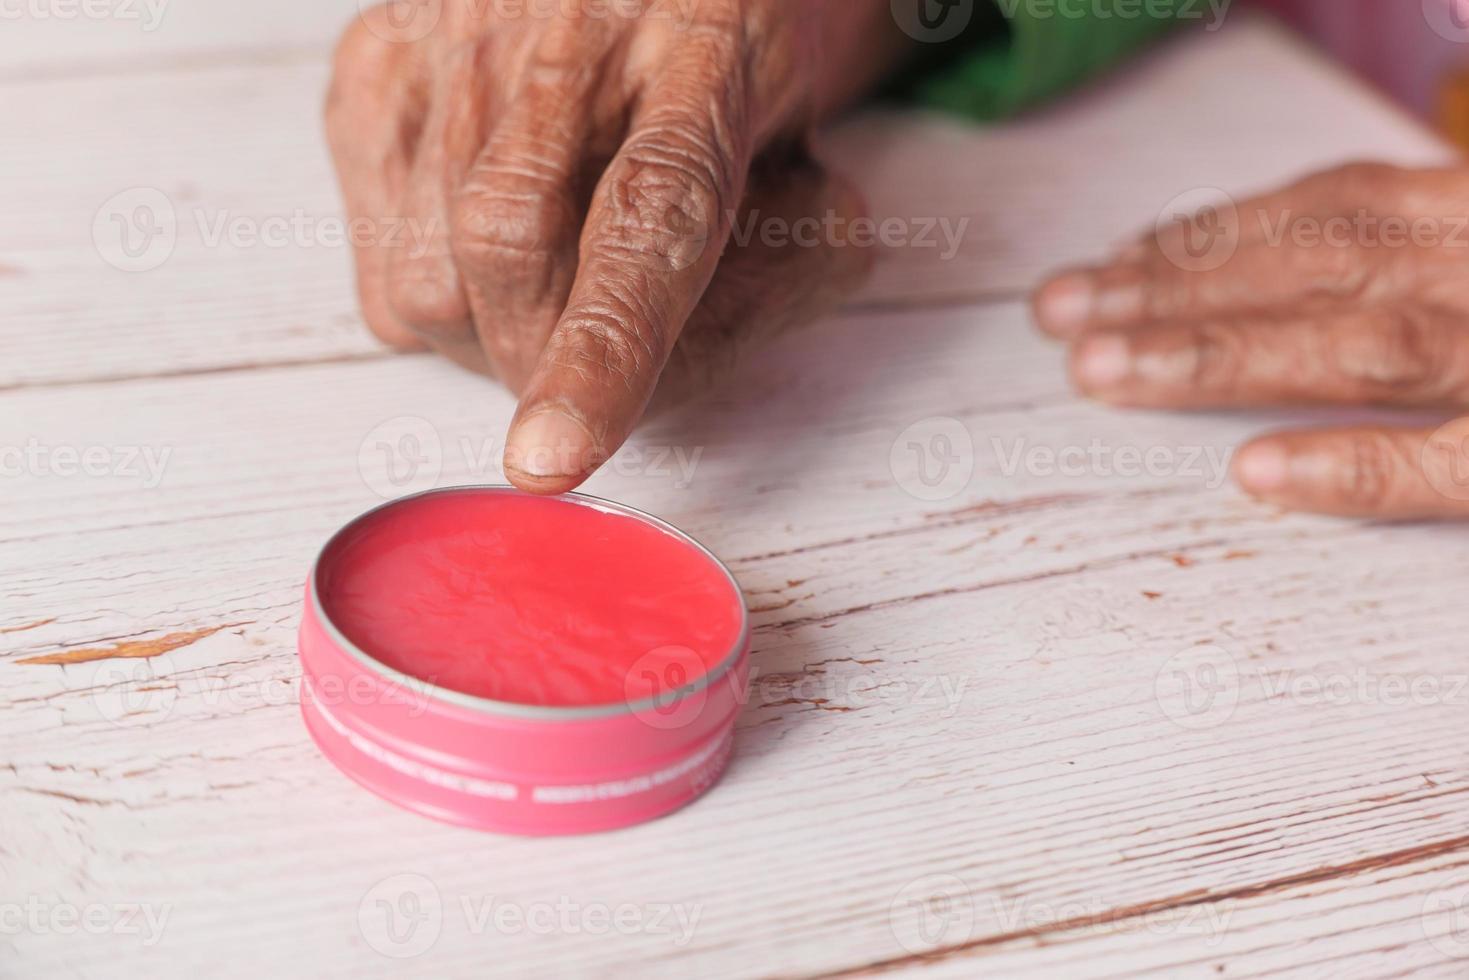 rosa Vaseline auf dem Tisch foto